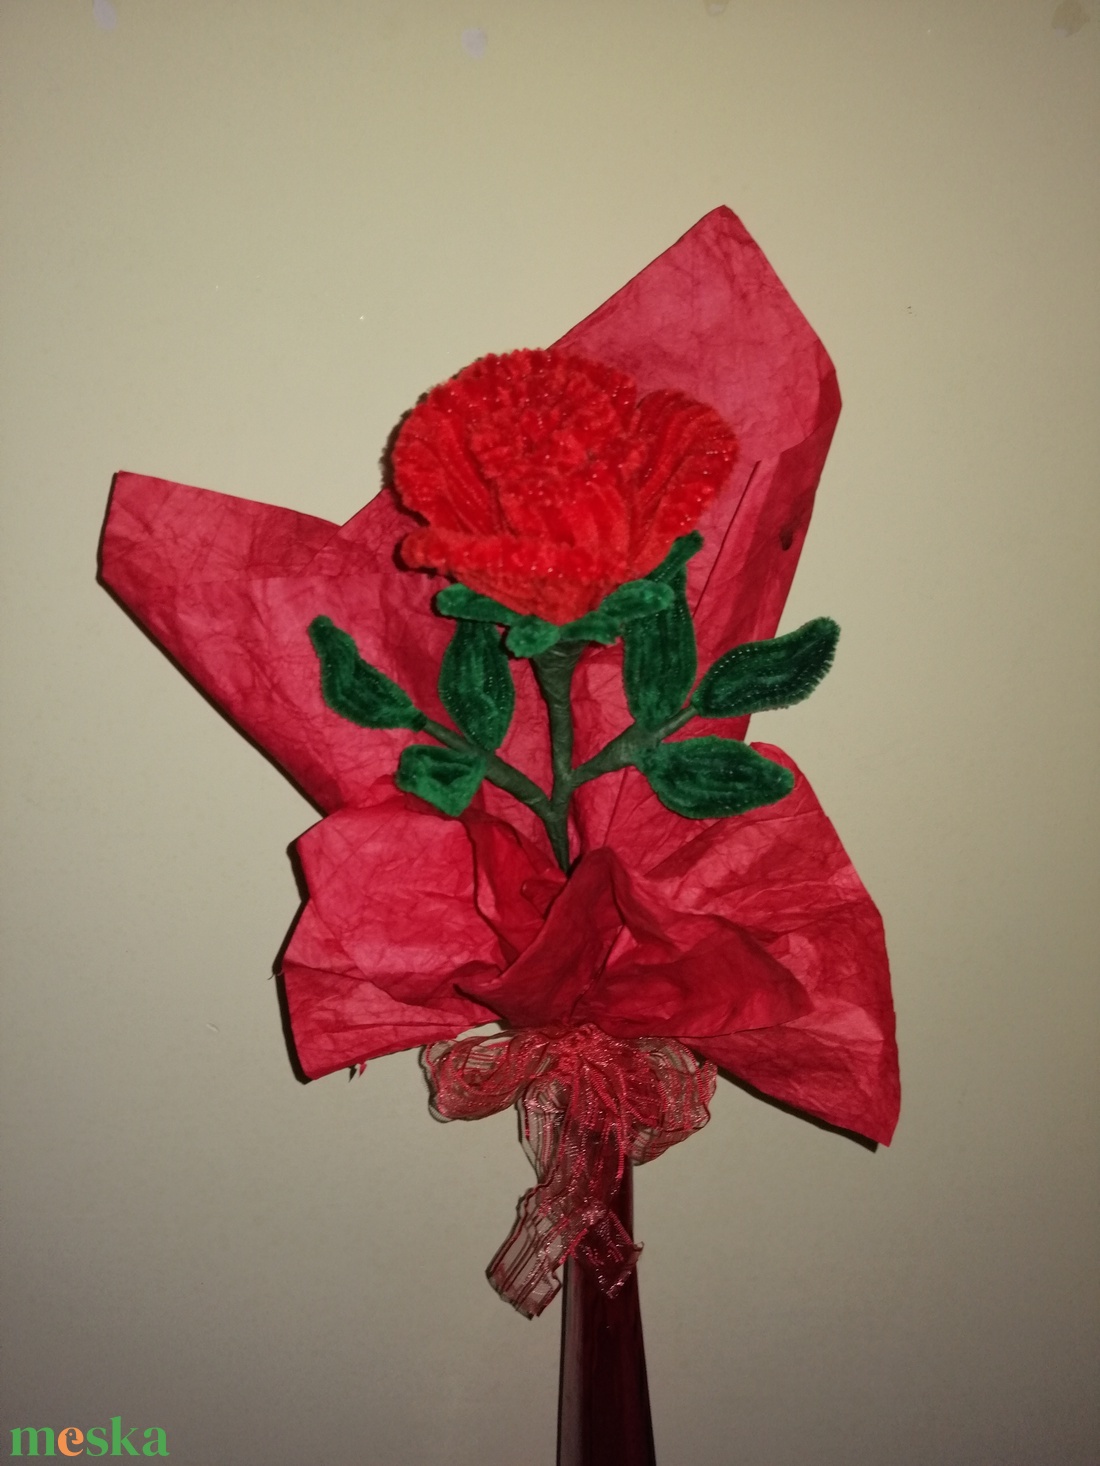 Zsenília vörös rózsa - otthon & lakás - dekoráció - virágdísz és tartó - csokor & virágdísz - Meska.hu